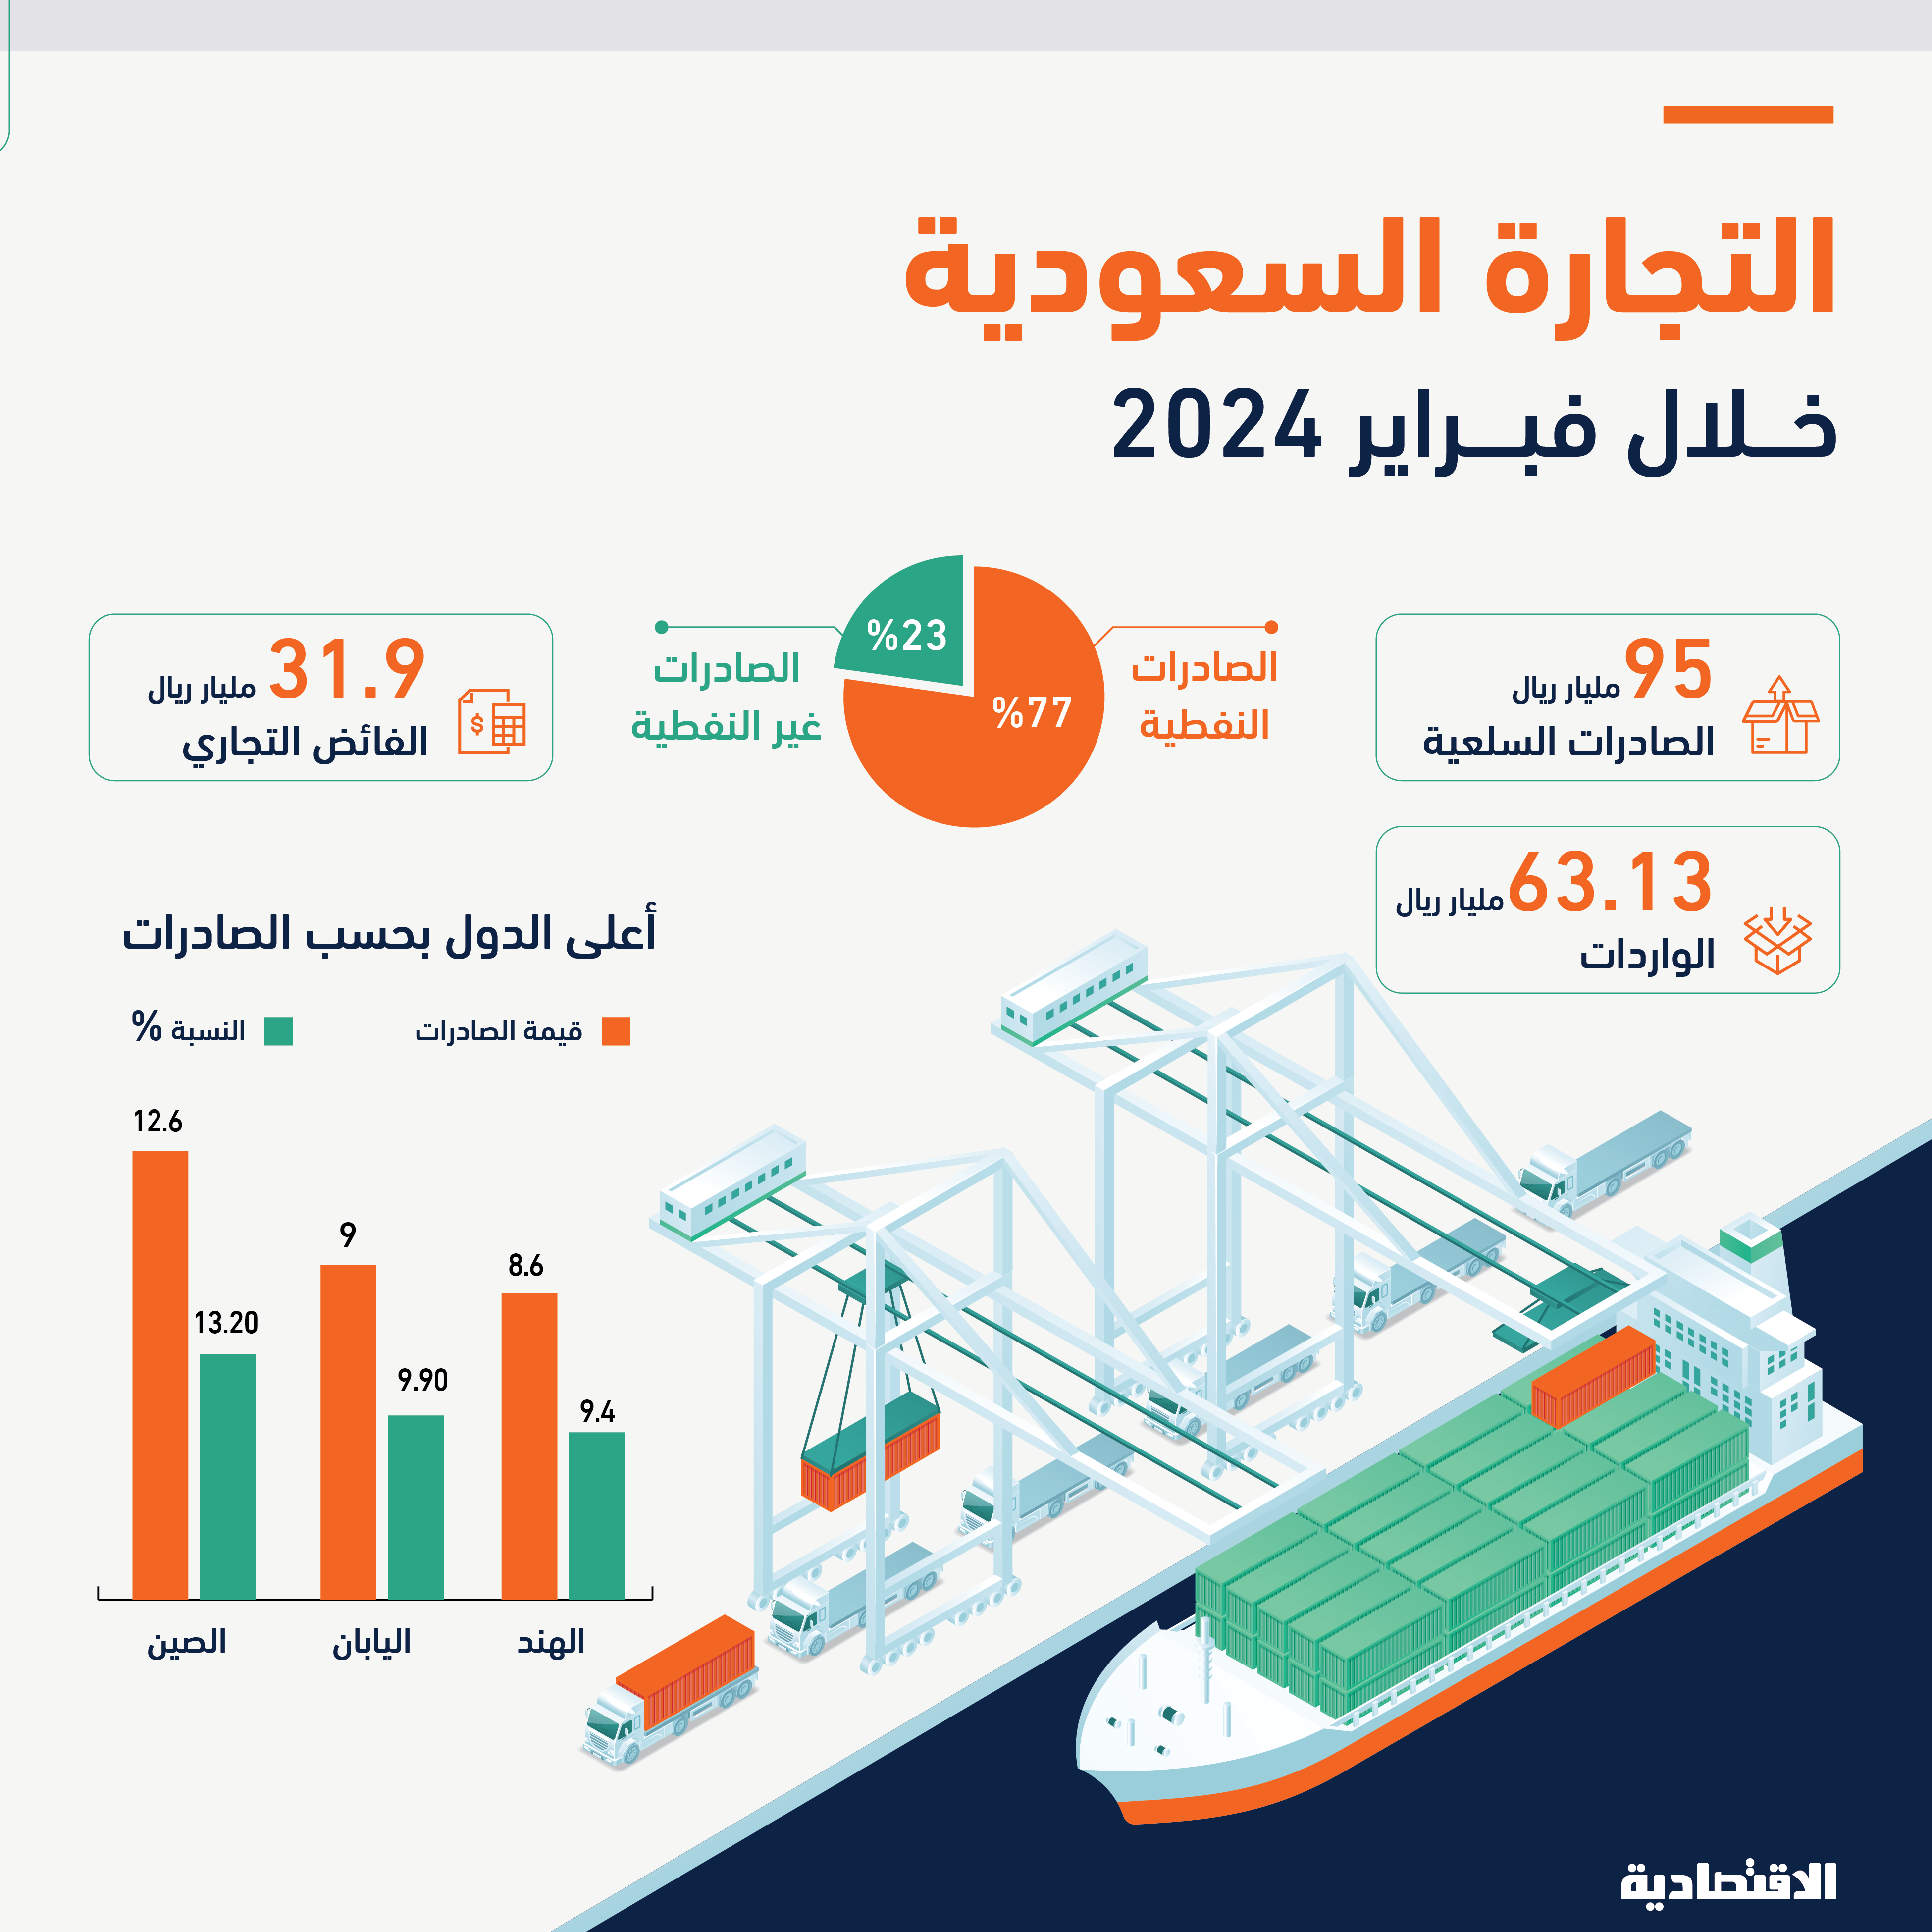 هبوط فائض الميزان التجاري السعودي 22 % في فبراير إلى 31.9 مليار ريال مع نمو الواردات وتراجع الصادرات